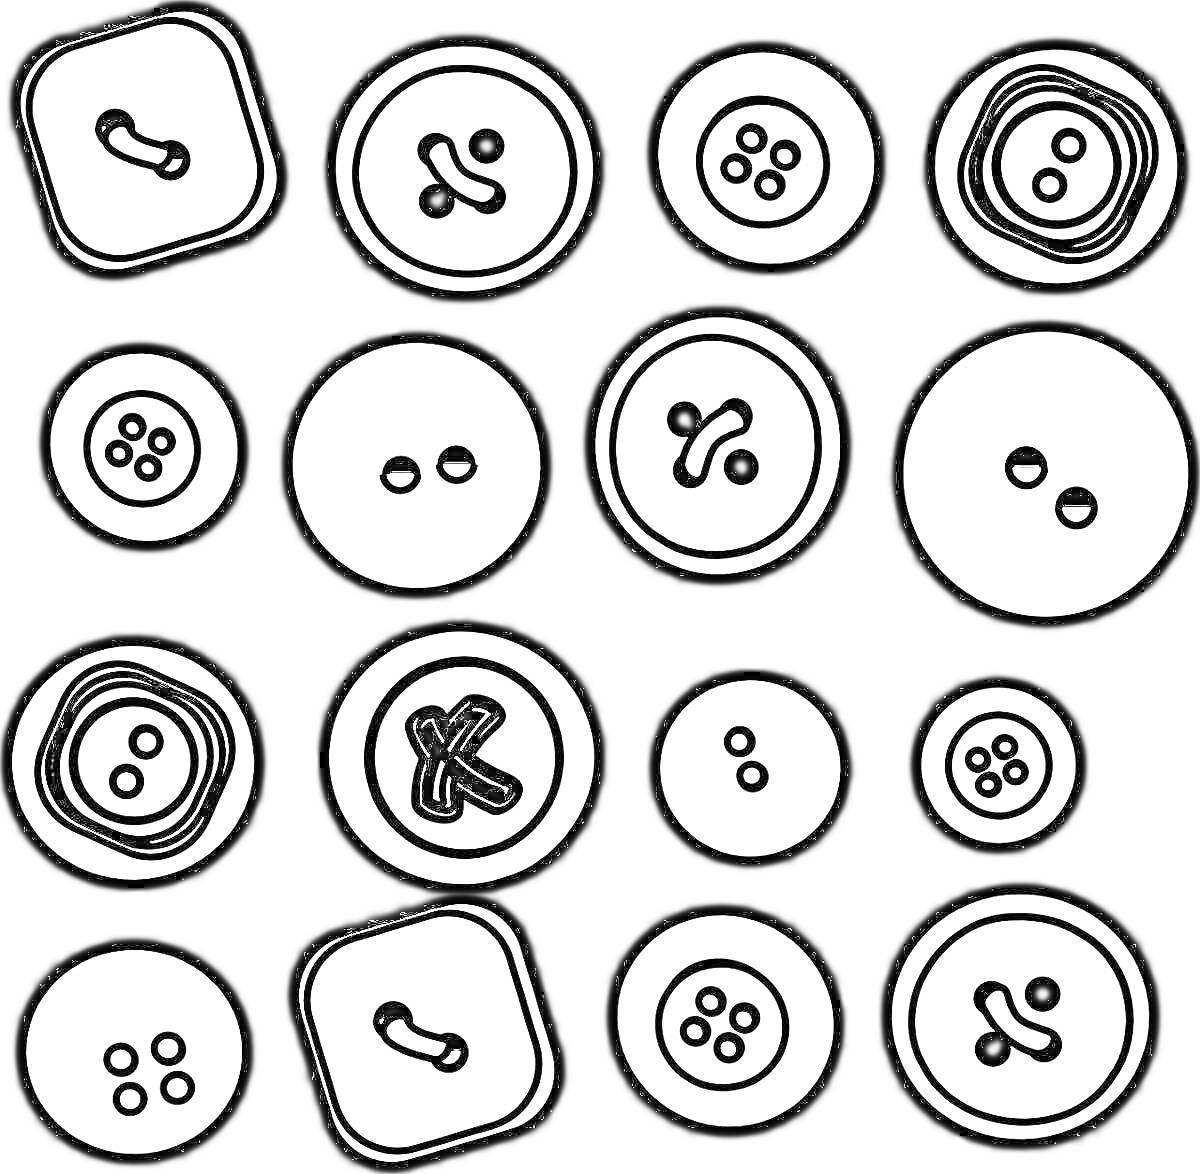 РаскраскаРазнообразные пуговицы в виде кружков и квадратов с двумя, тремя и четырьмя дырками.